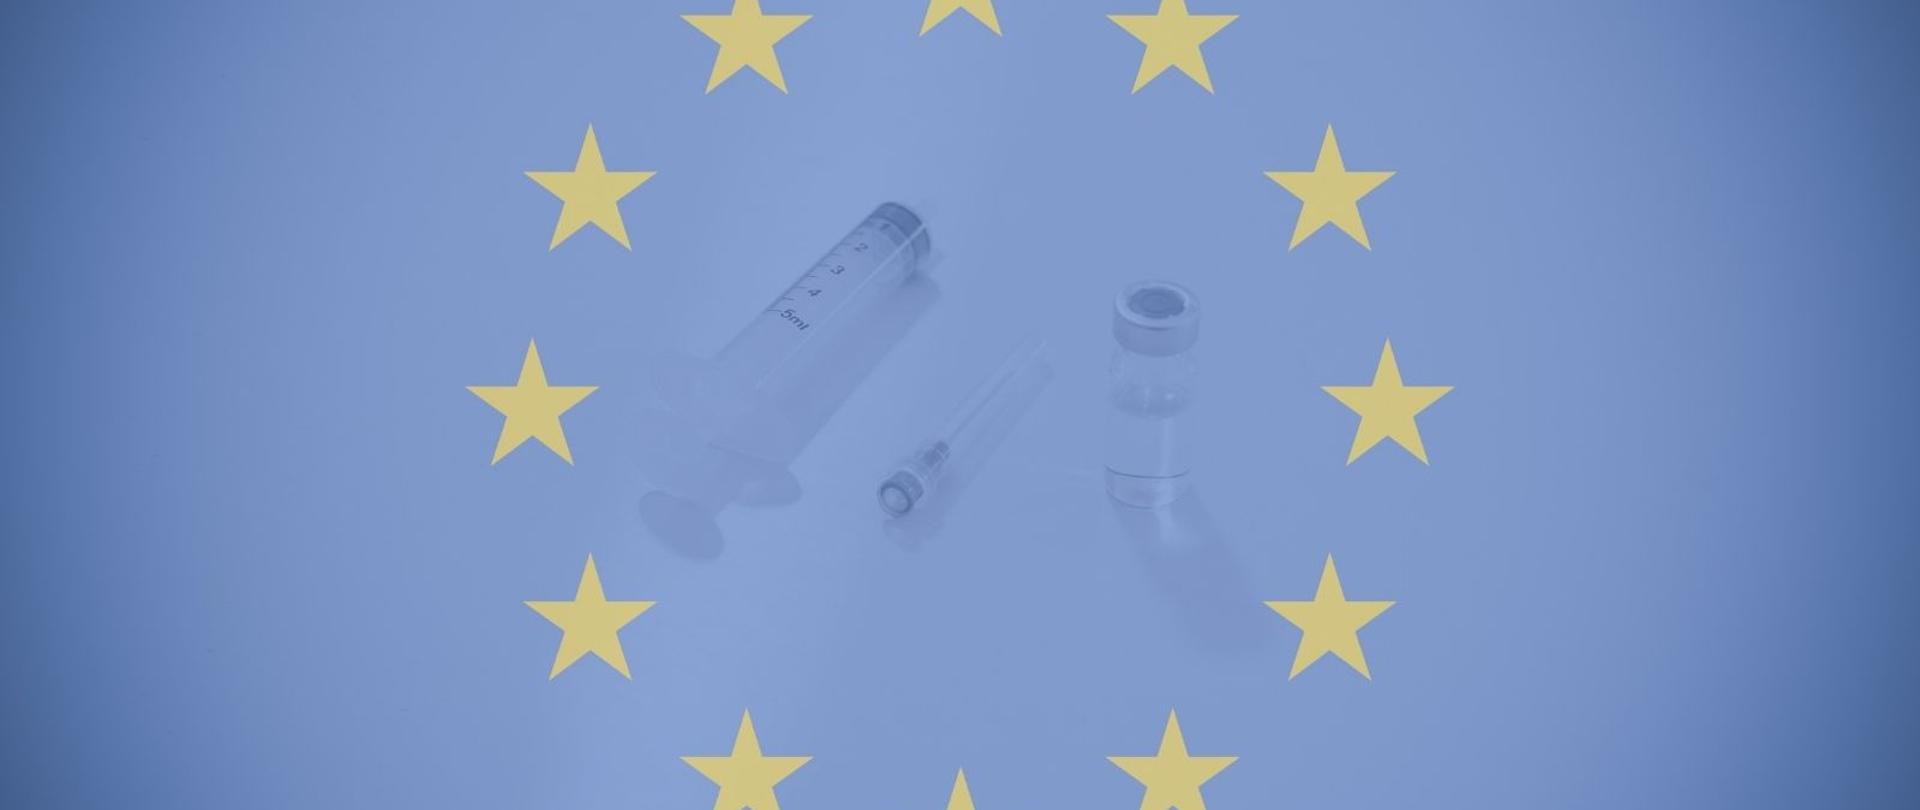 Flaga Unii Europejskiej, w środku okręgu z gwiazdek - szczepionka i strzykawka z igłą